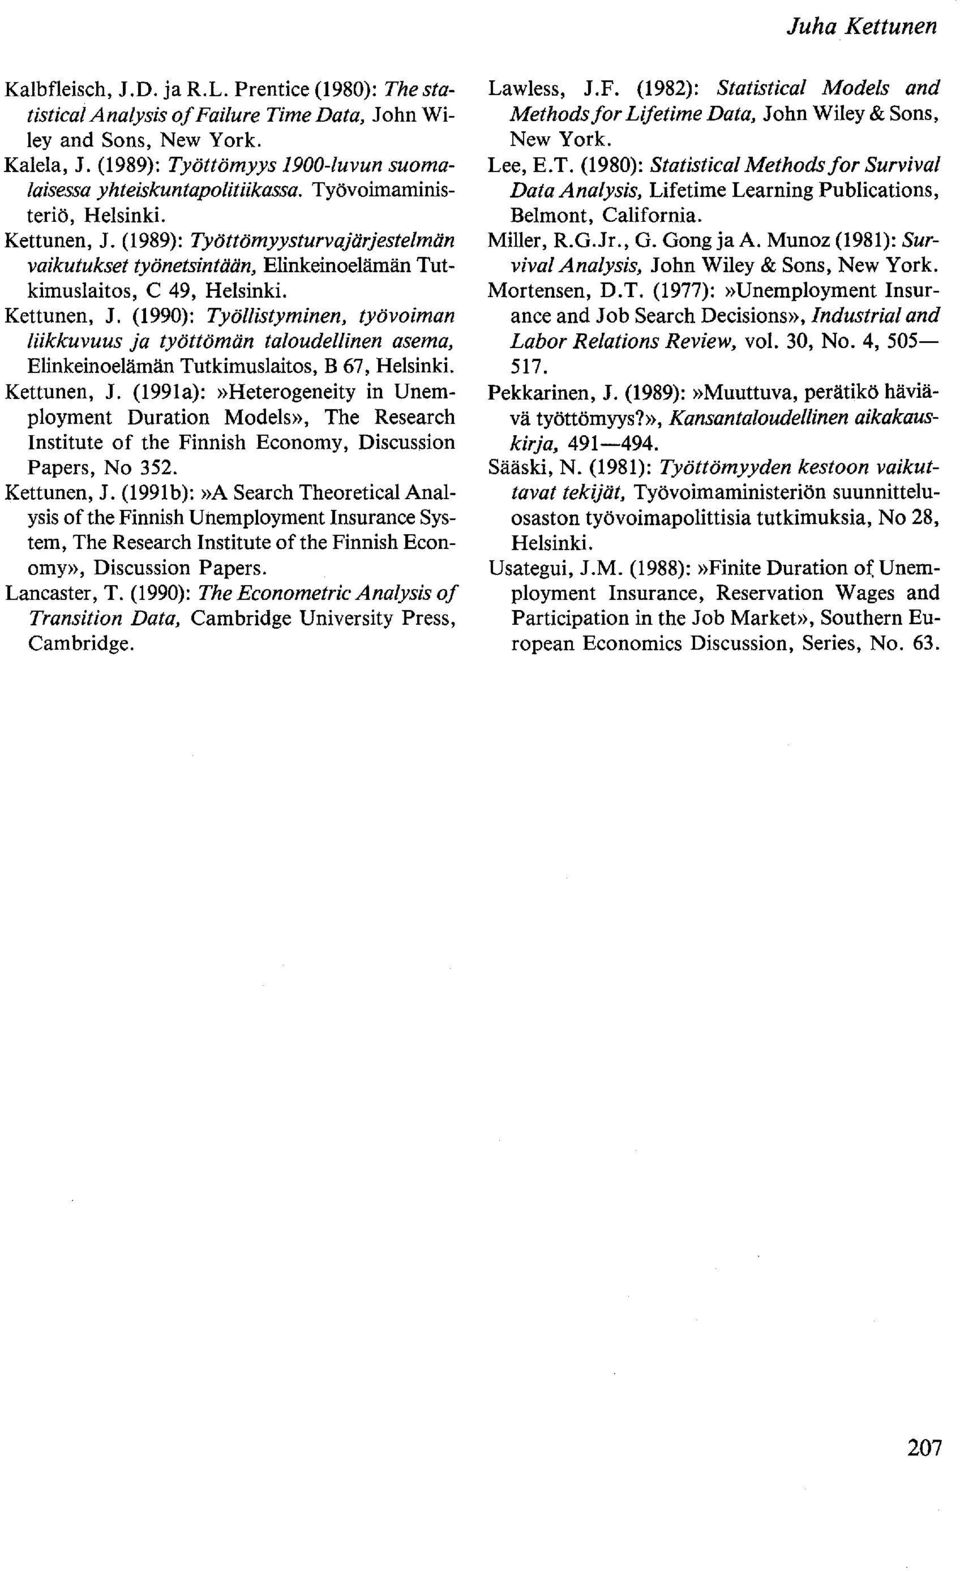 (1989): Työttömyysturvajärjestelmän vaikutukset työnetsintään, Elinkeinoelämän Tutkimuslaitos, C 49, Helsinki. Kettunen, J.